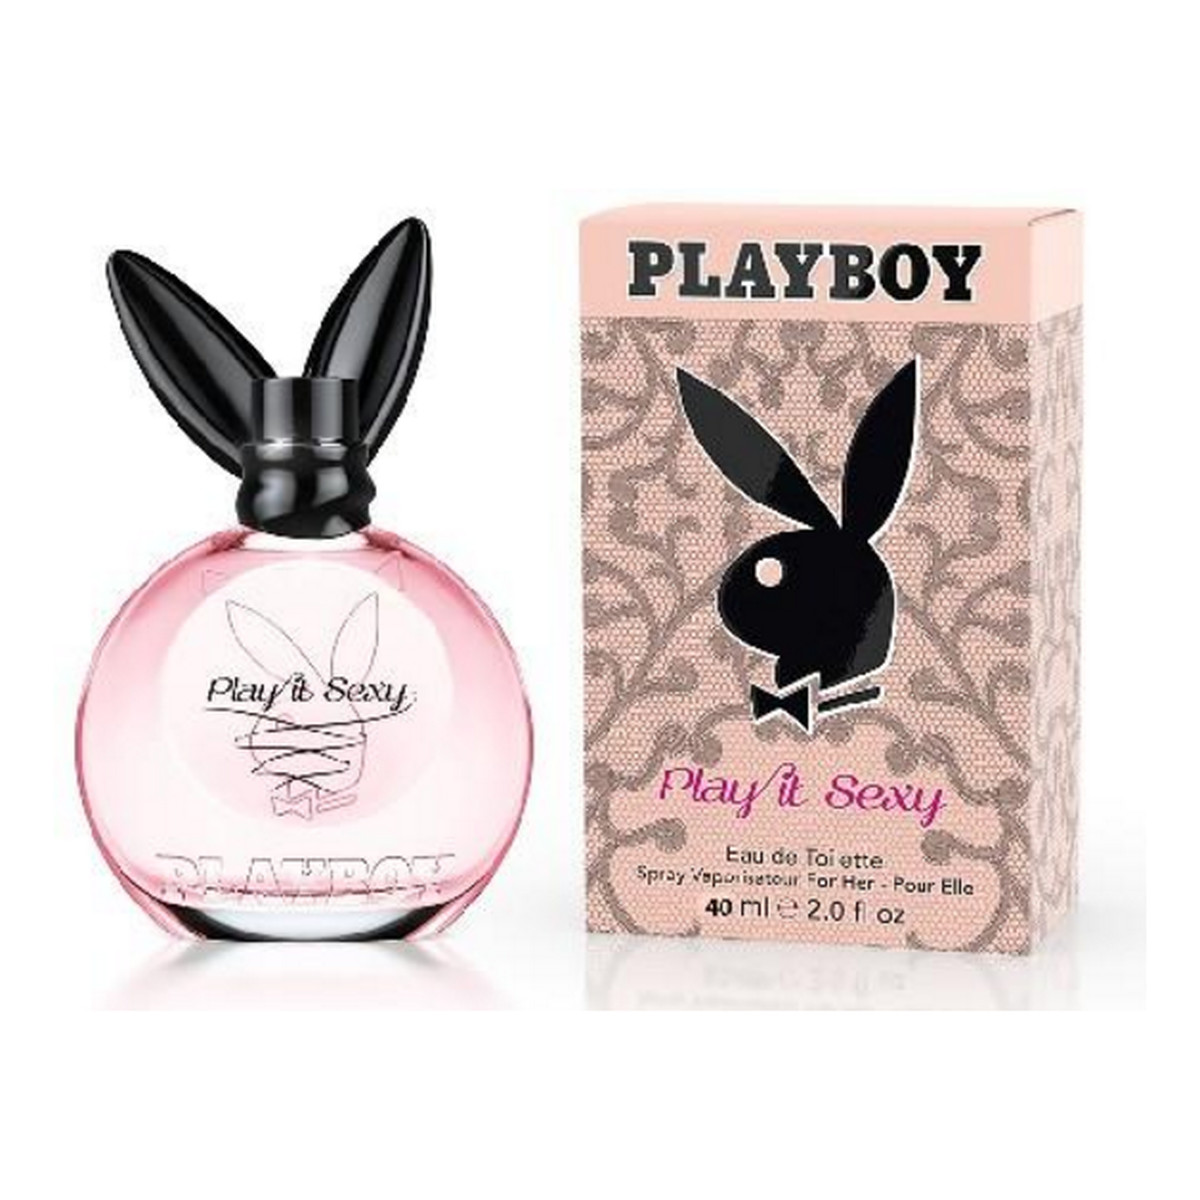 Playboy Play It Sexy Woda toaletowa 40ml